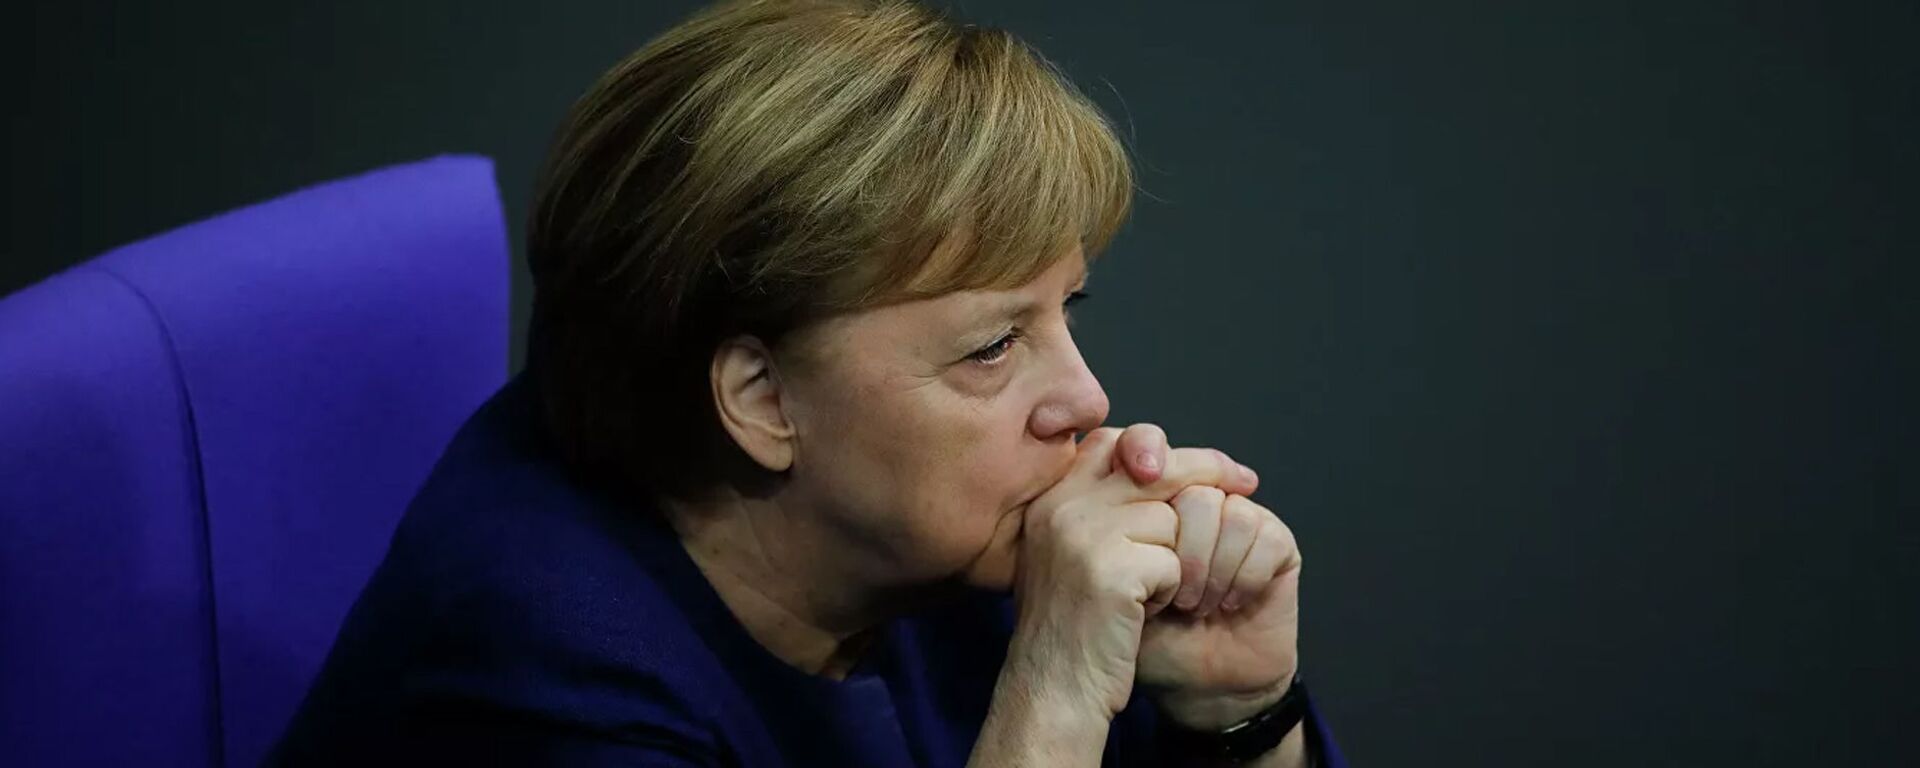 Vokietijos kanclerė Angela Merkel - Sputnik Lietuva, 1920, 02.11.2021